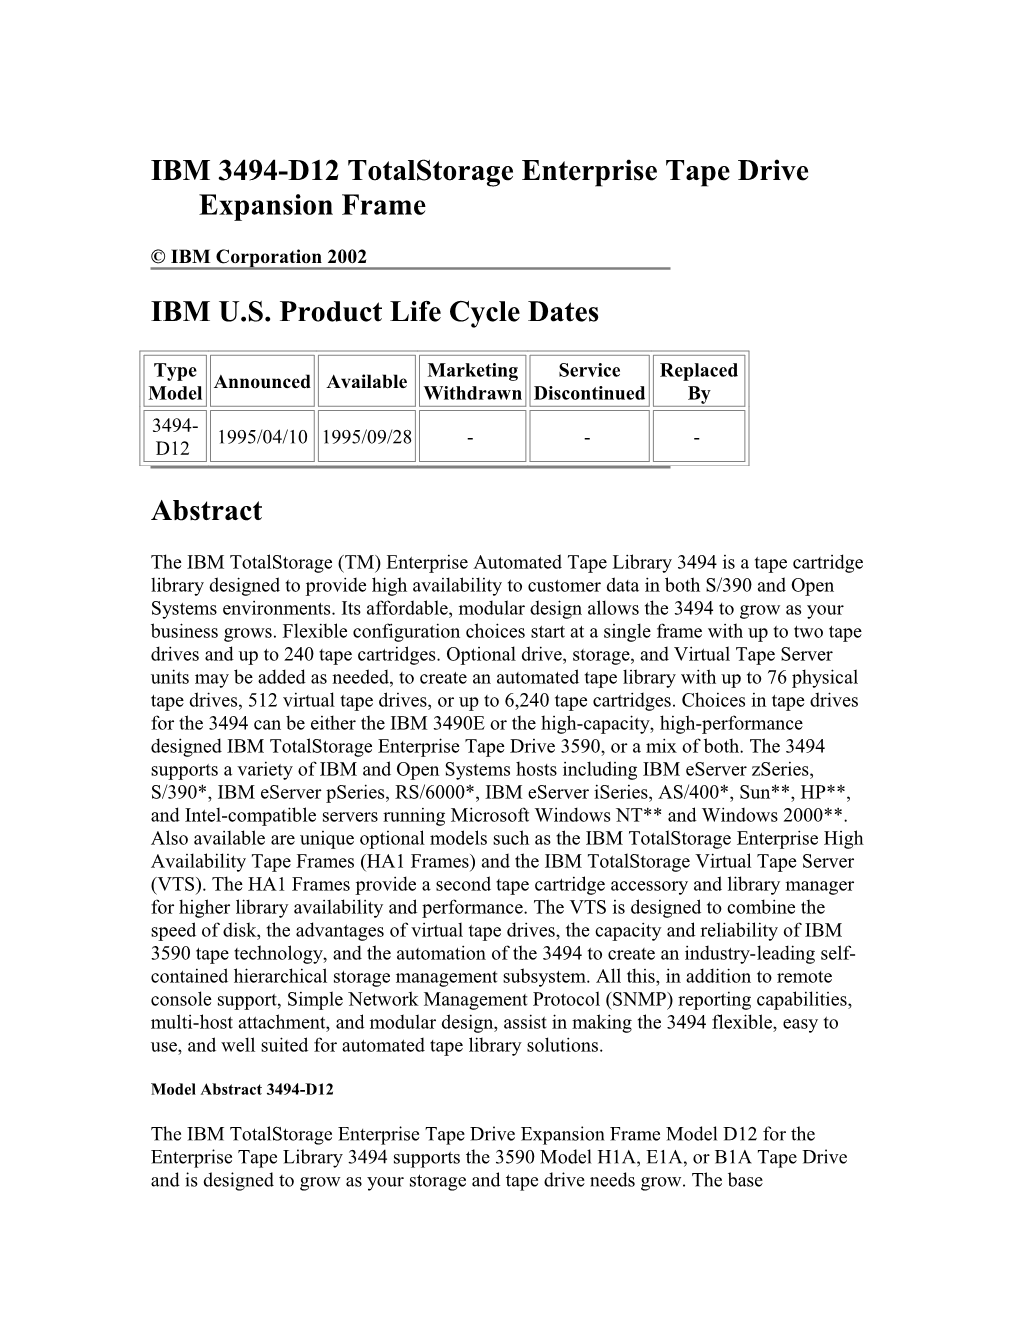 IBM 3494-D12 Totalstorage Enterprise Tape Drive Expansion Frame